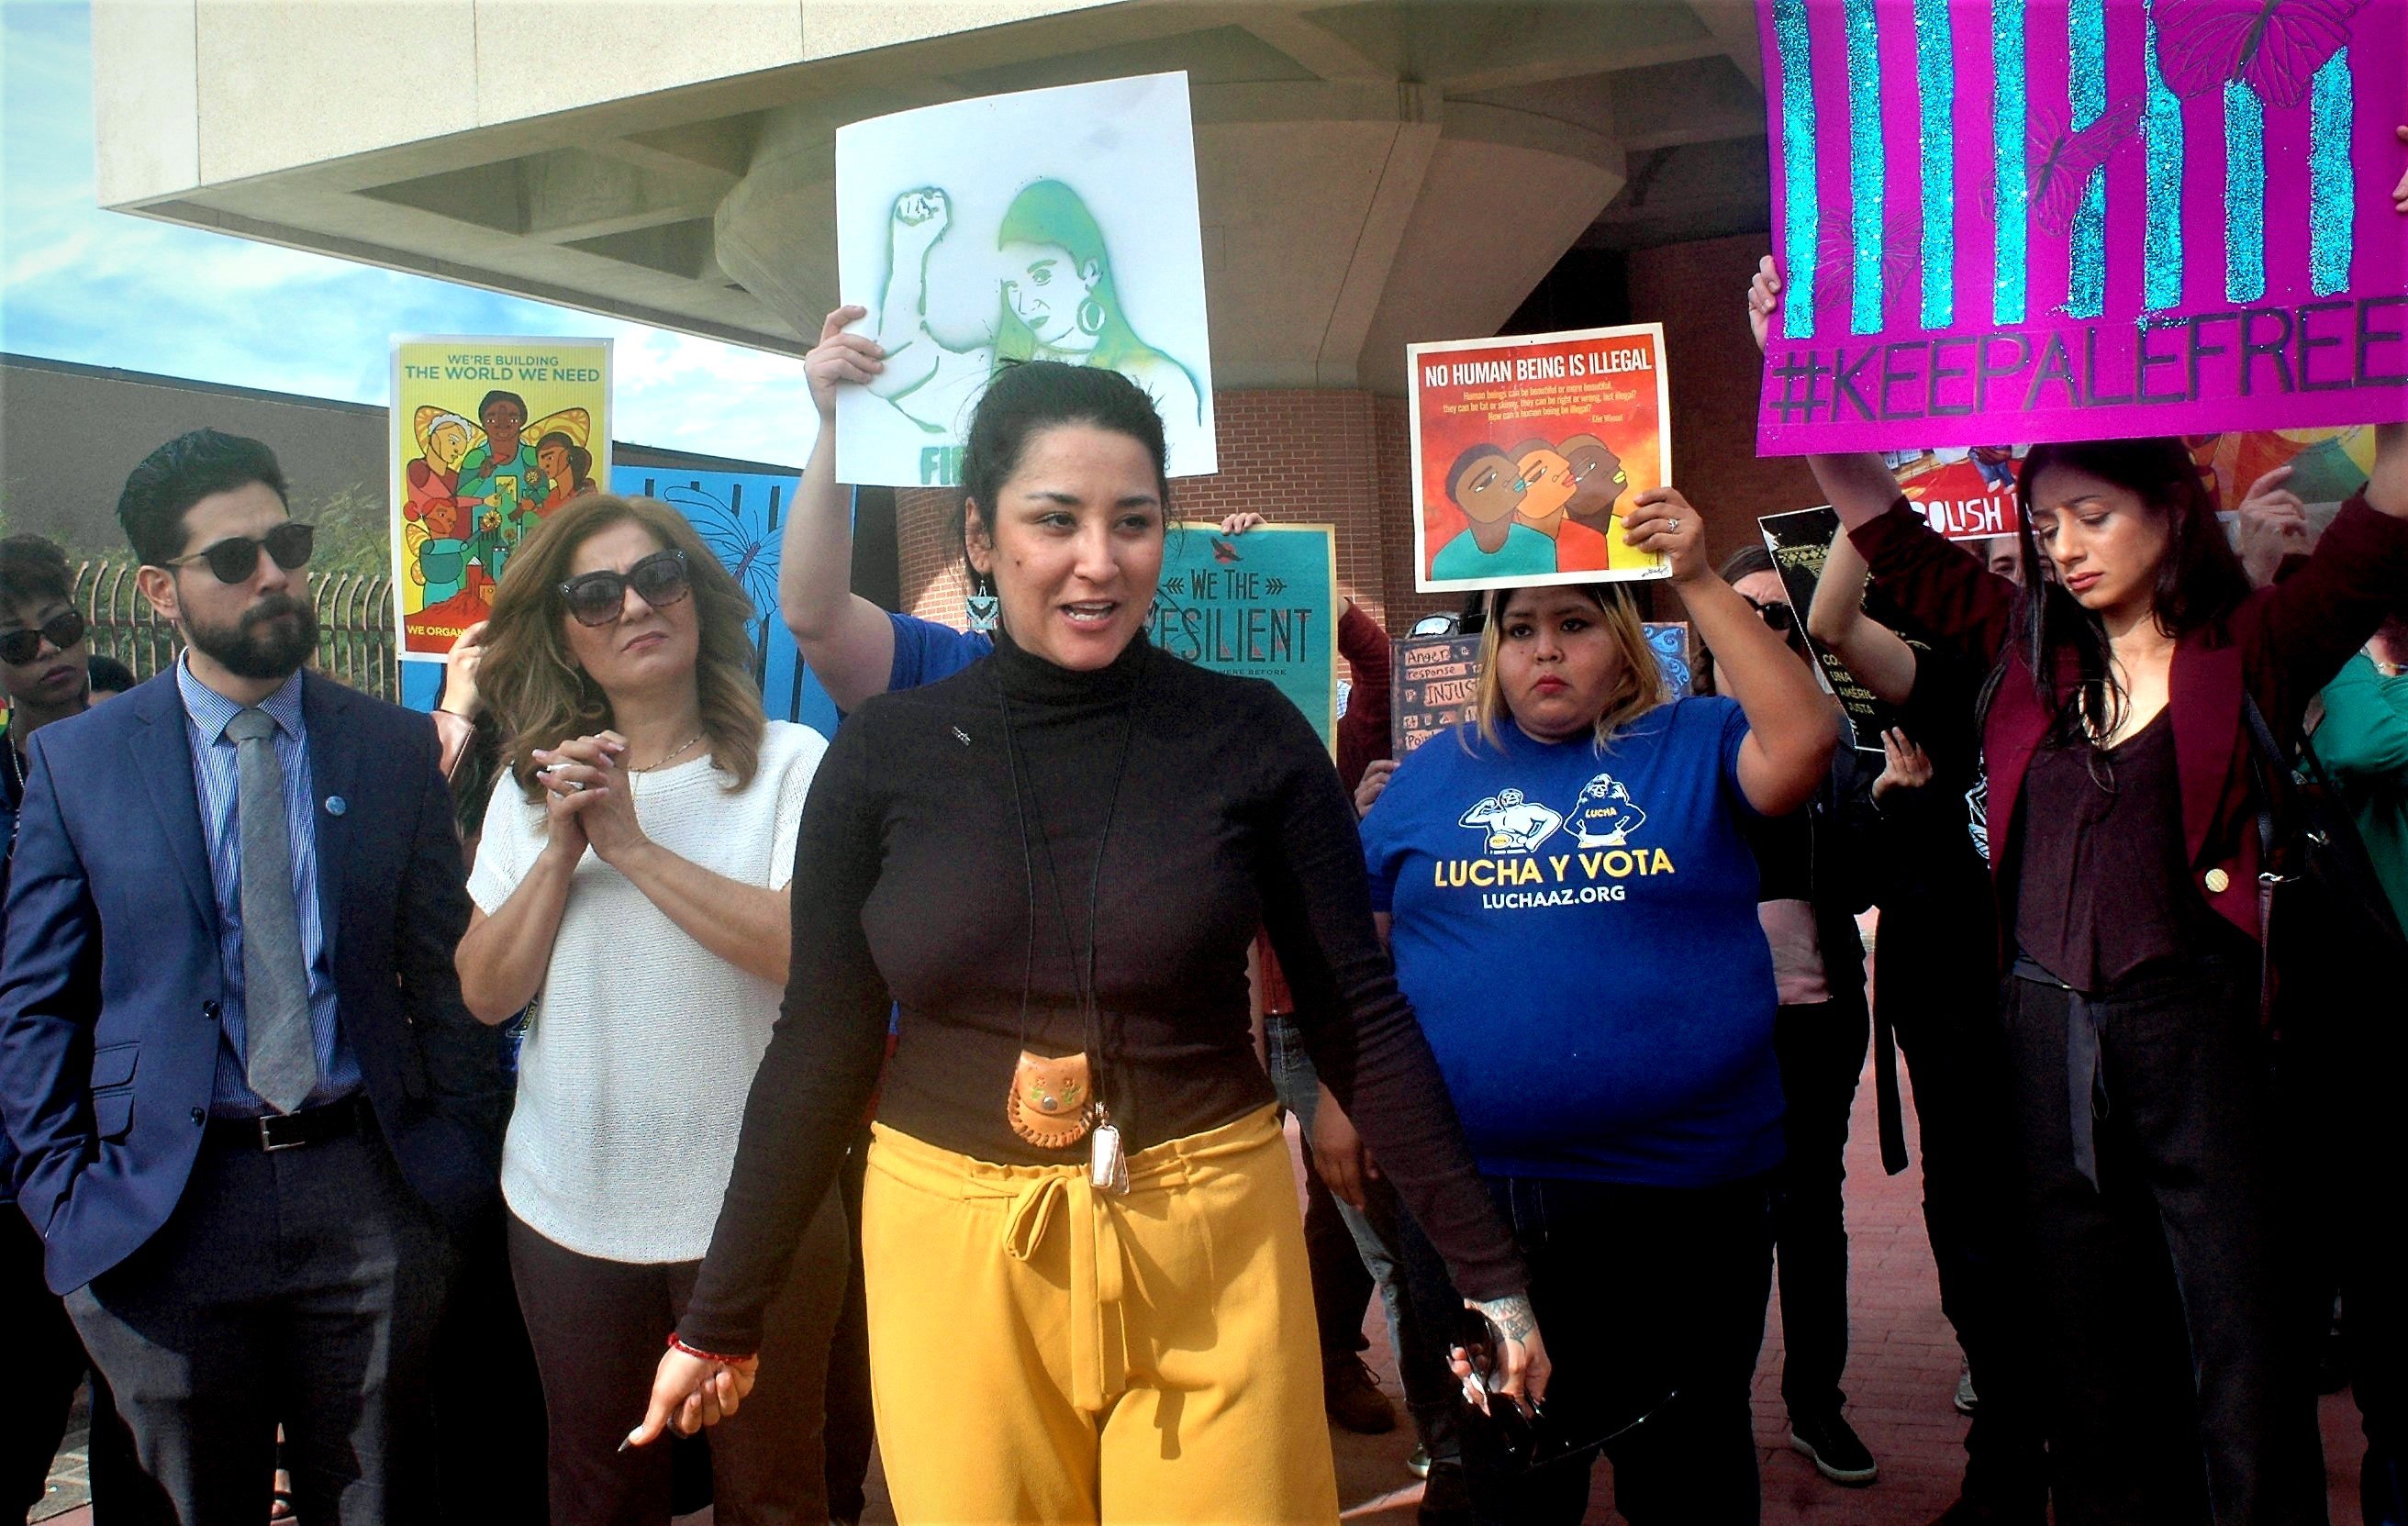  Un juez de Arizona ordena la deportación de la activista Alejandra Pablos